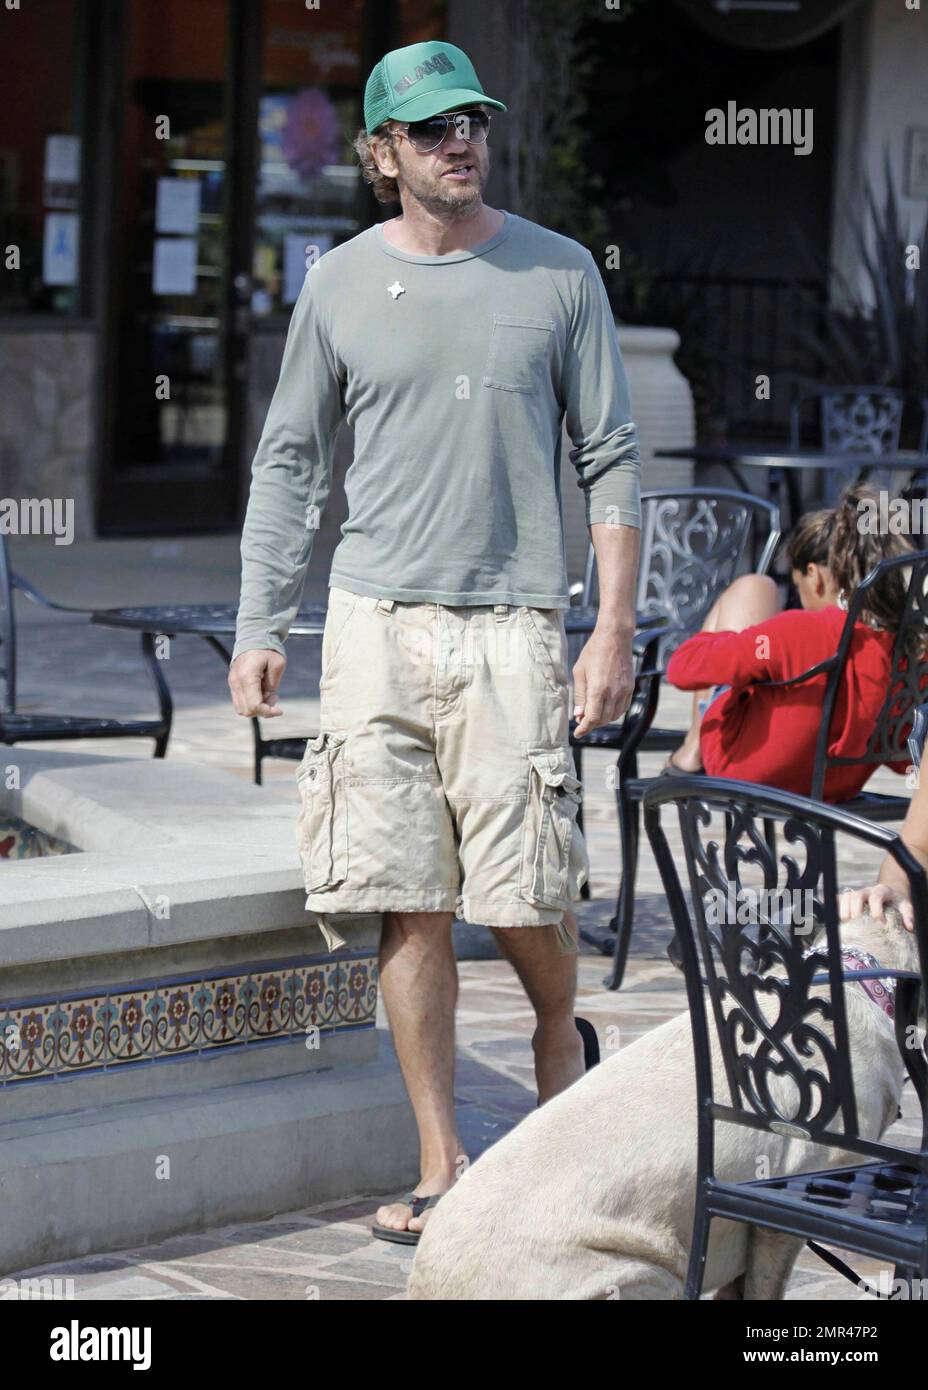 Gerard Butler in un cappello verde da baseball, t shirt e pantaloncini è  visto dirigersi verso un locale pizzeria per un boccone da mangiare.  Mescolandosi come locale di Malibu, Butler si ferma